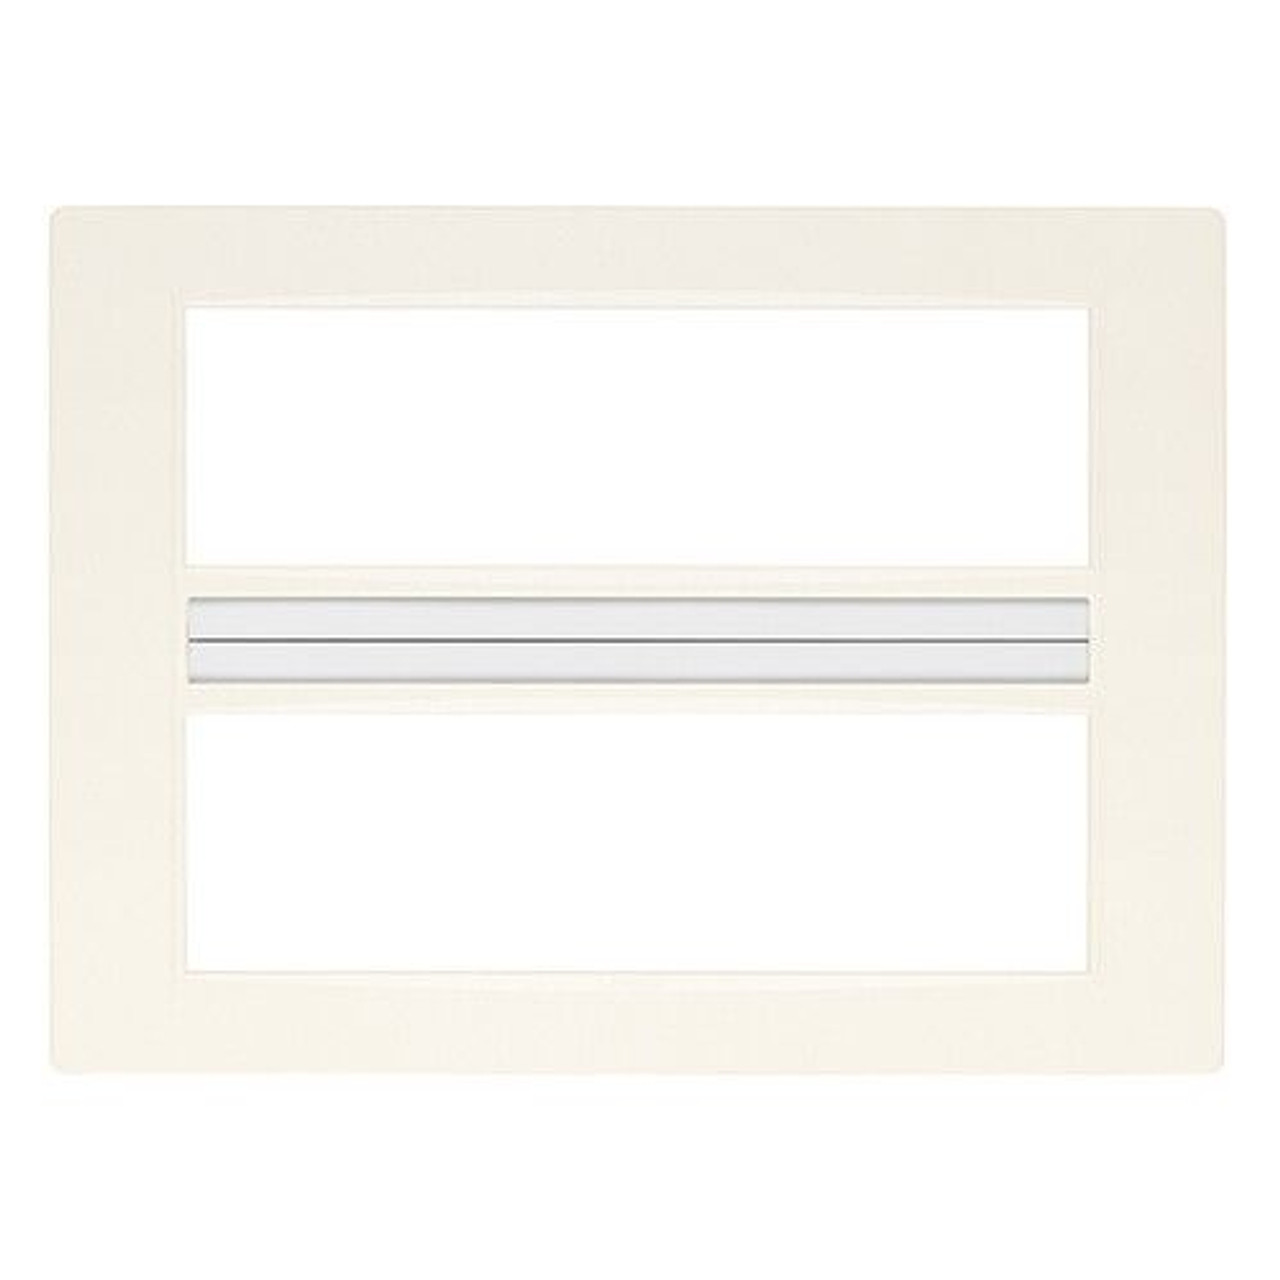 Vimar - Cover Plate - White (VM20660.01) - Apollo Lighting